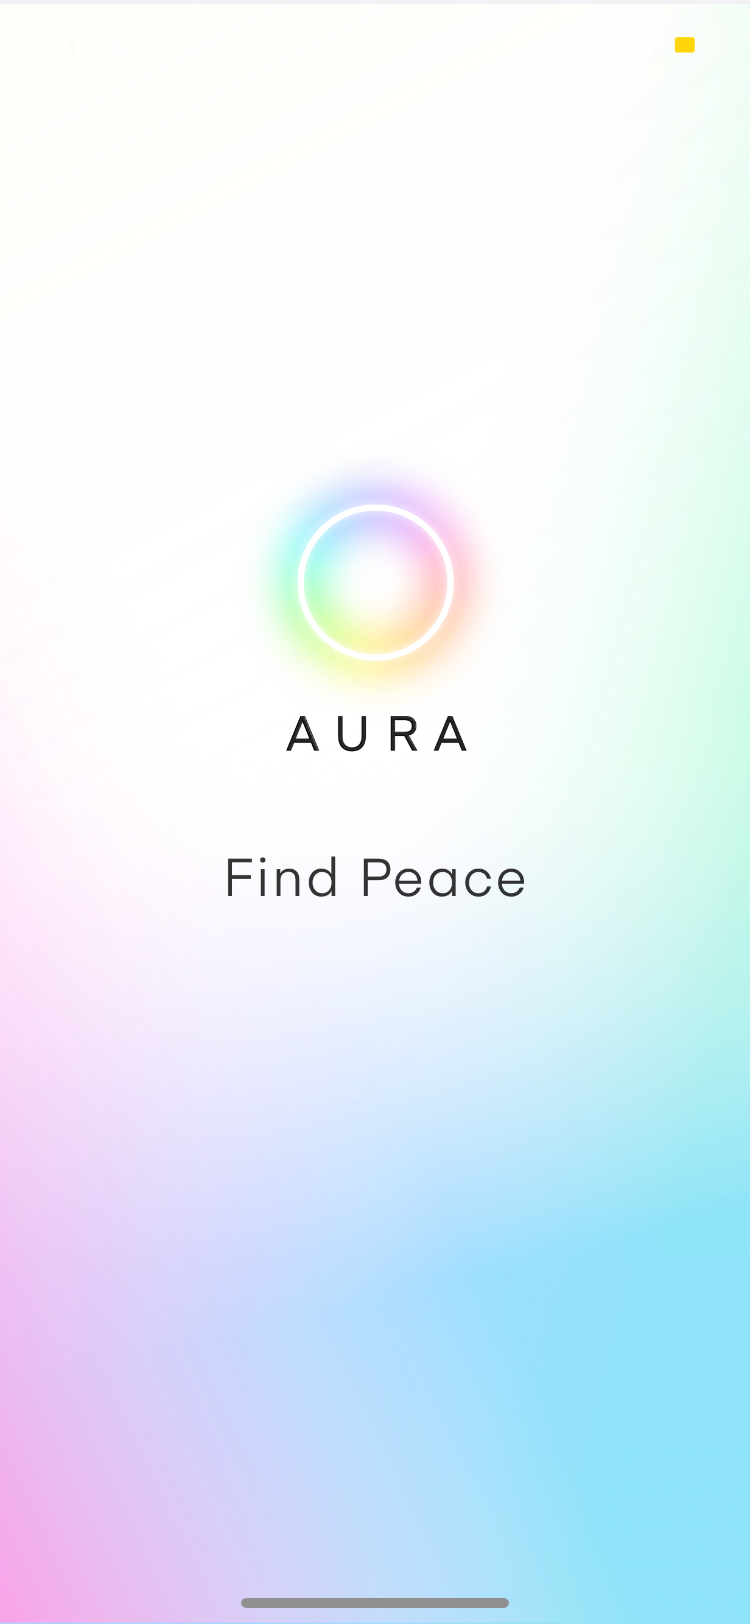 aura startup page